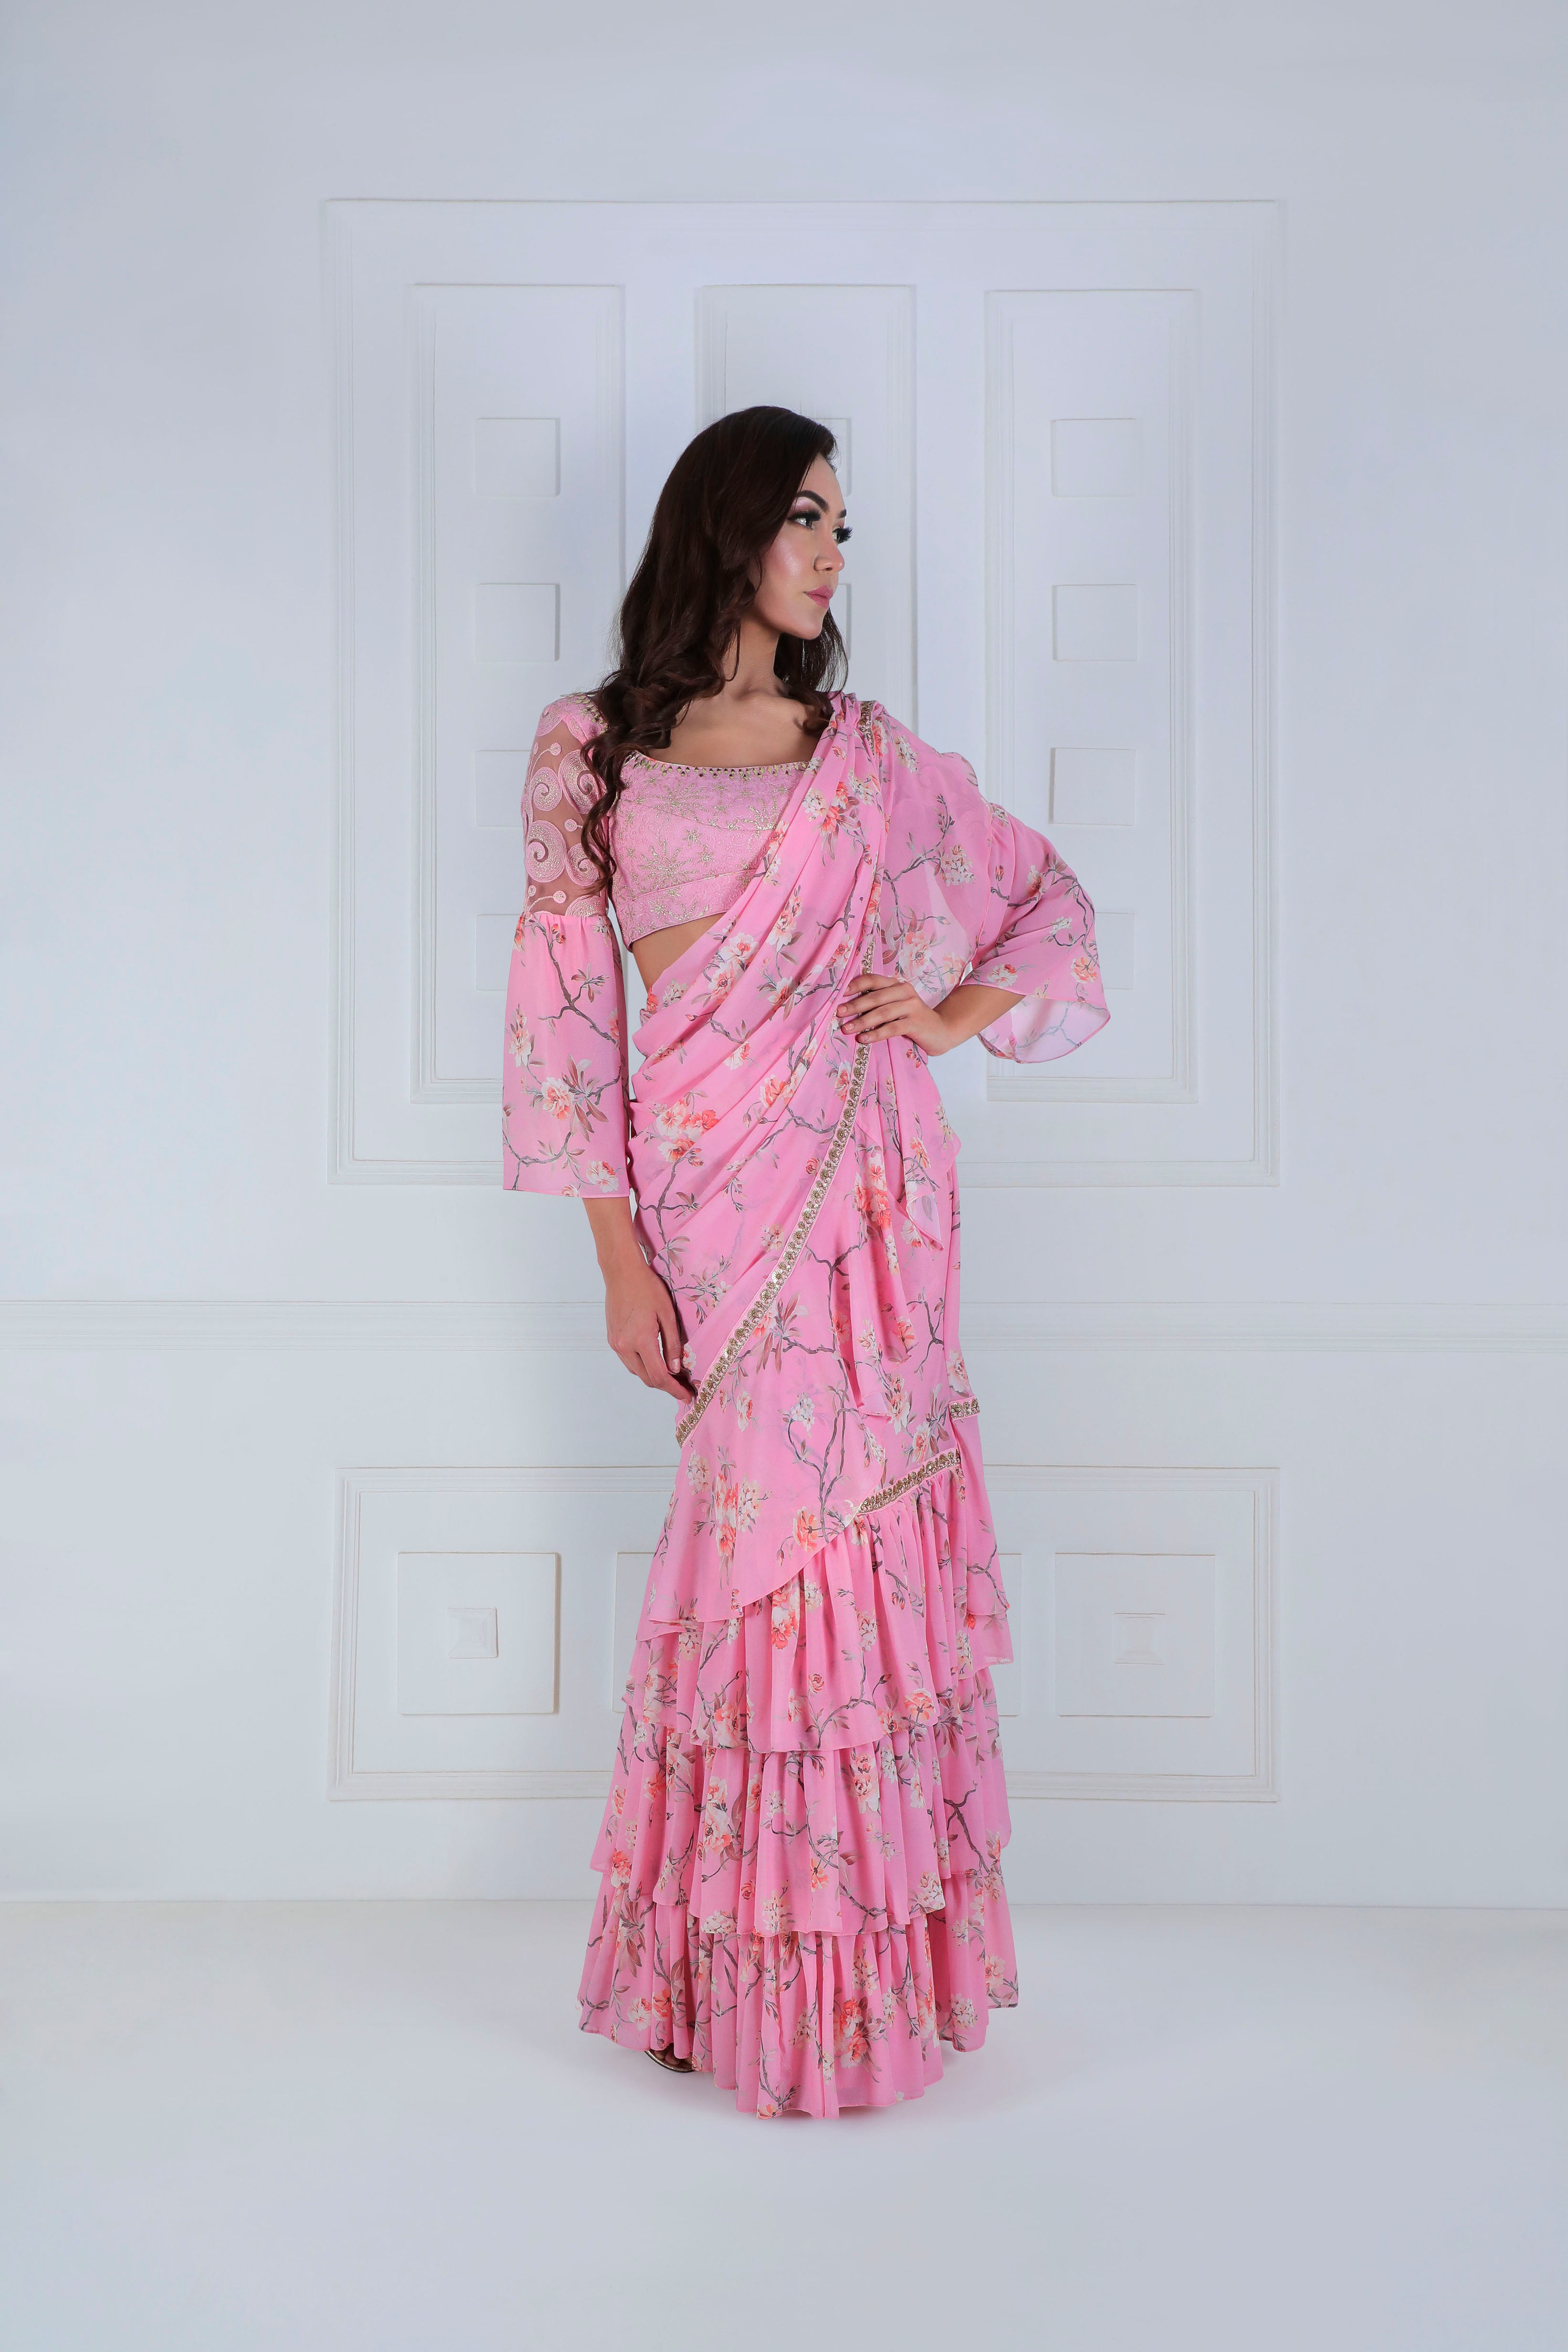 Printed Ruffle Sari with Modern Blouse - Saaj By Ankita